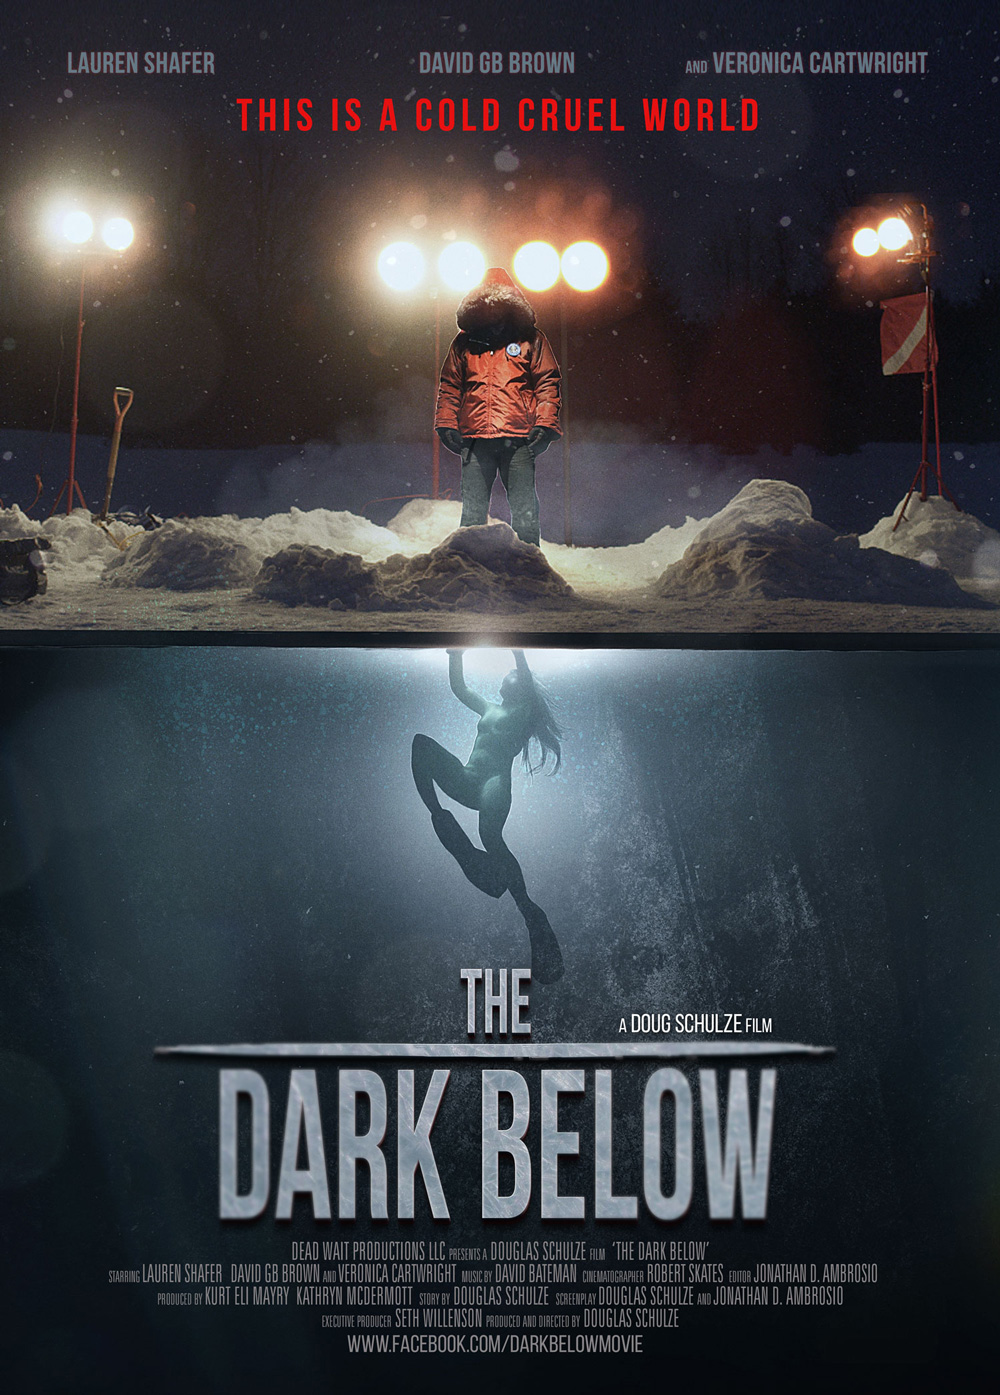 The Dark Below poster. Douglas Schulze